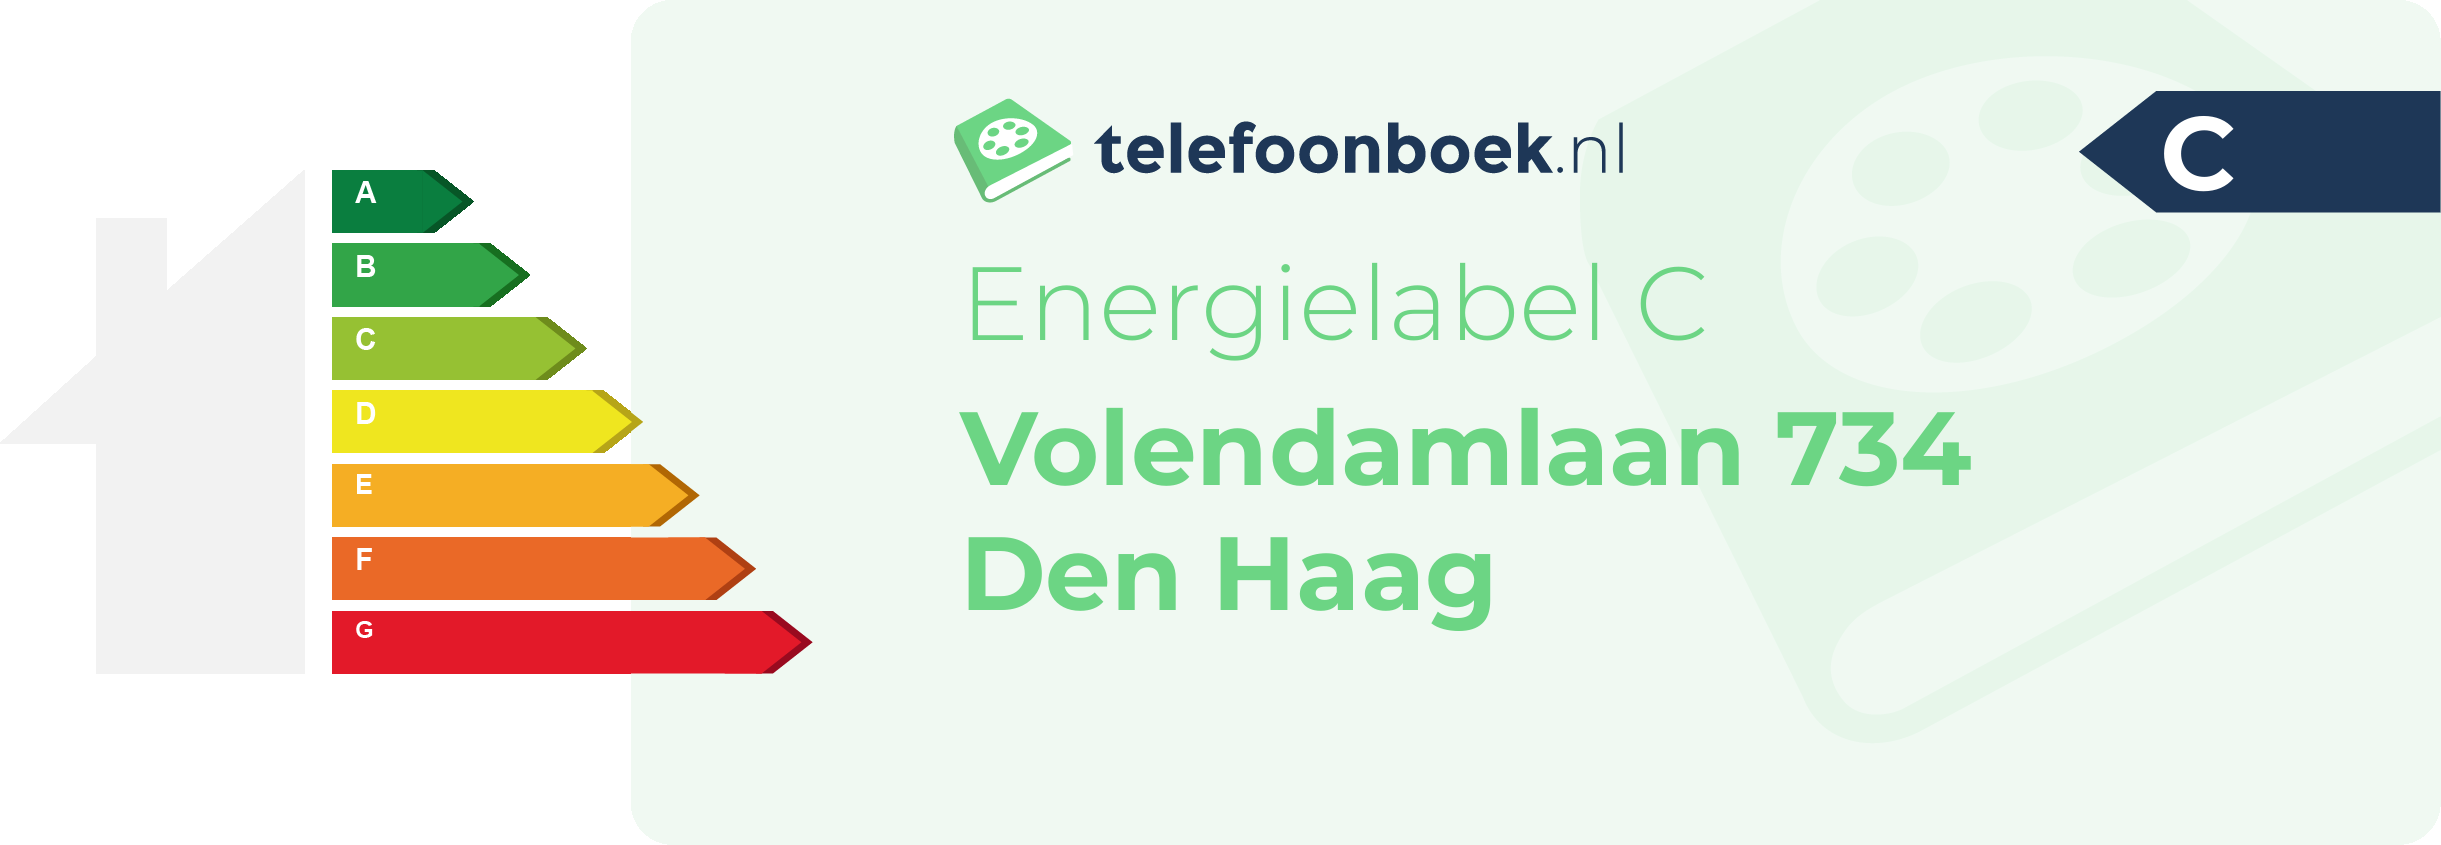 Energielabel Volendamlaan 734 Den Haag